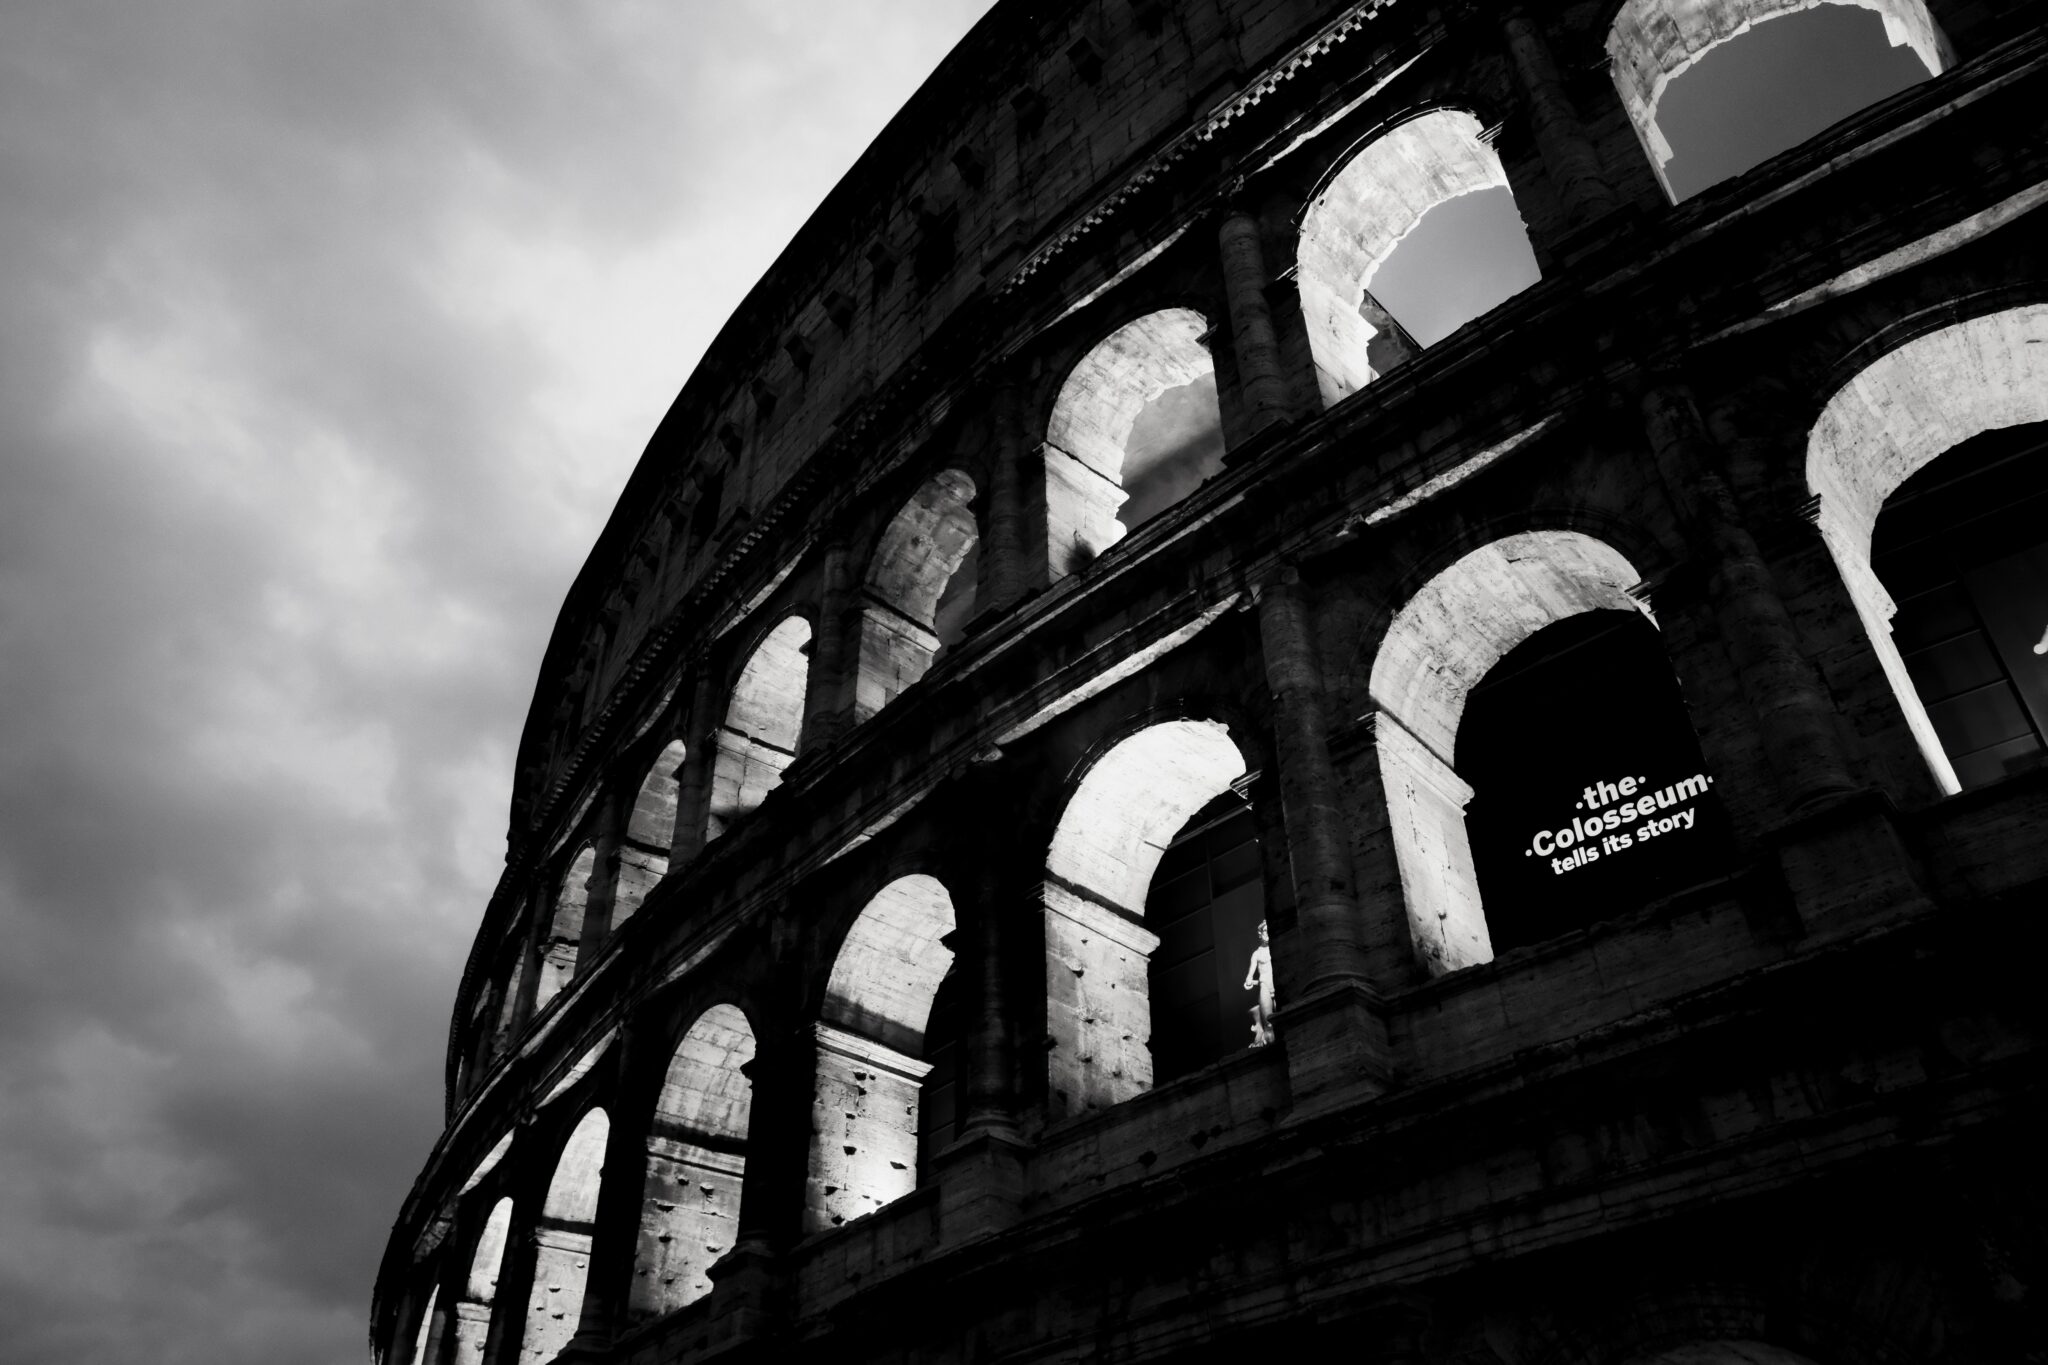 Das Kolosseum bei Tag und Nacht: Eine Fotoreise durch das Antike Rom